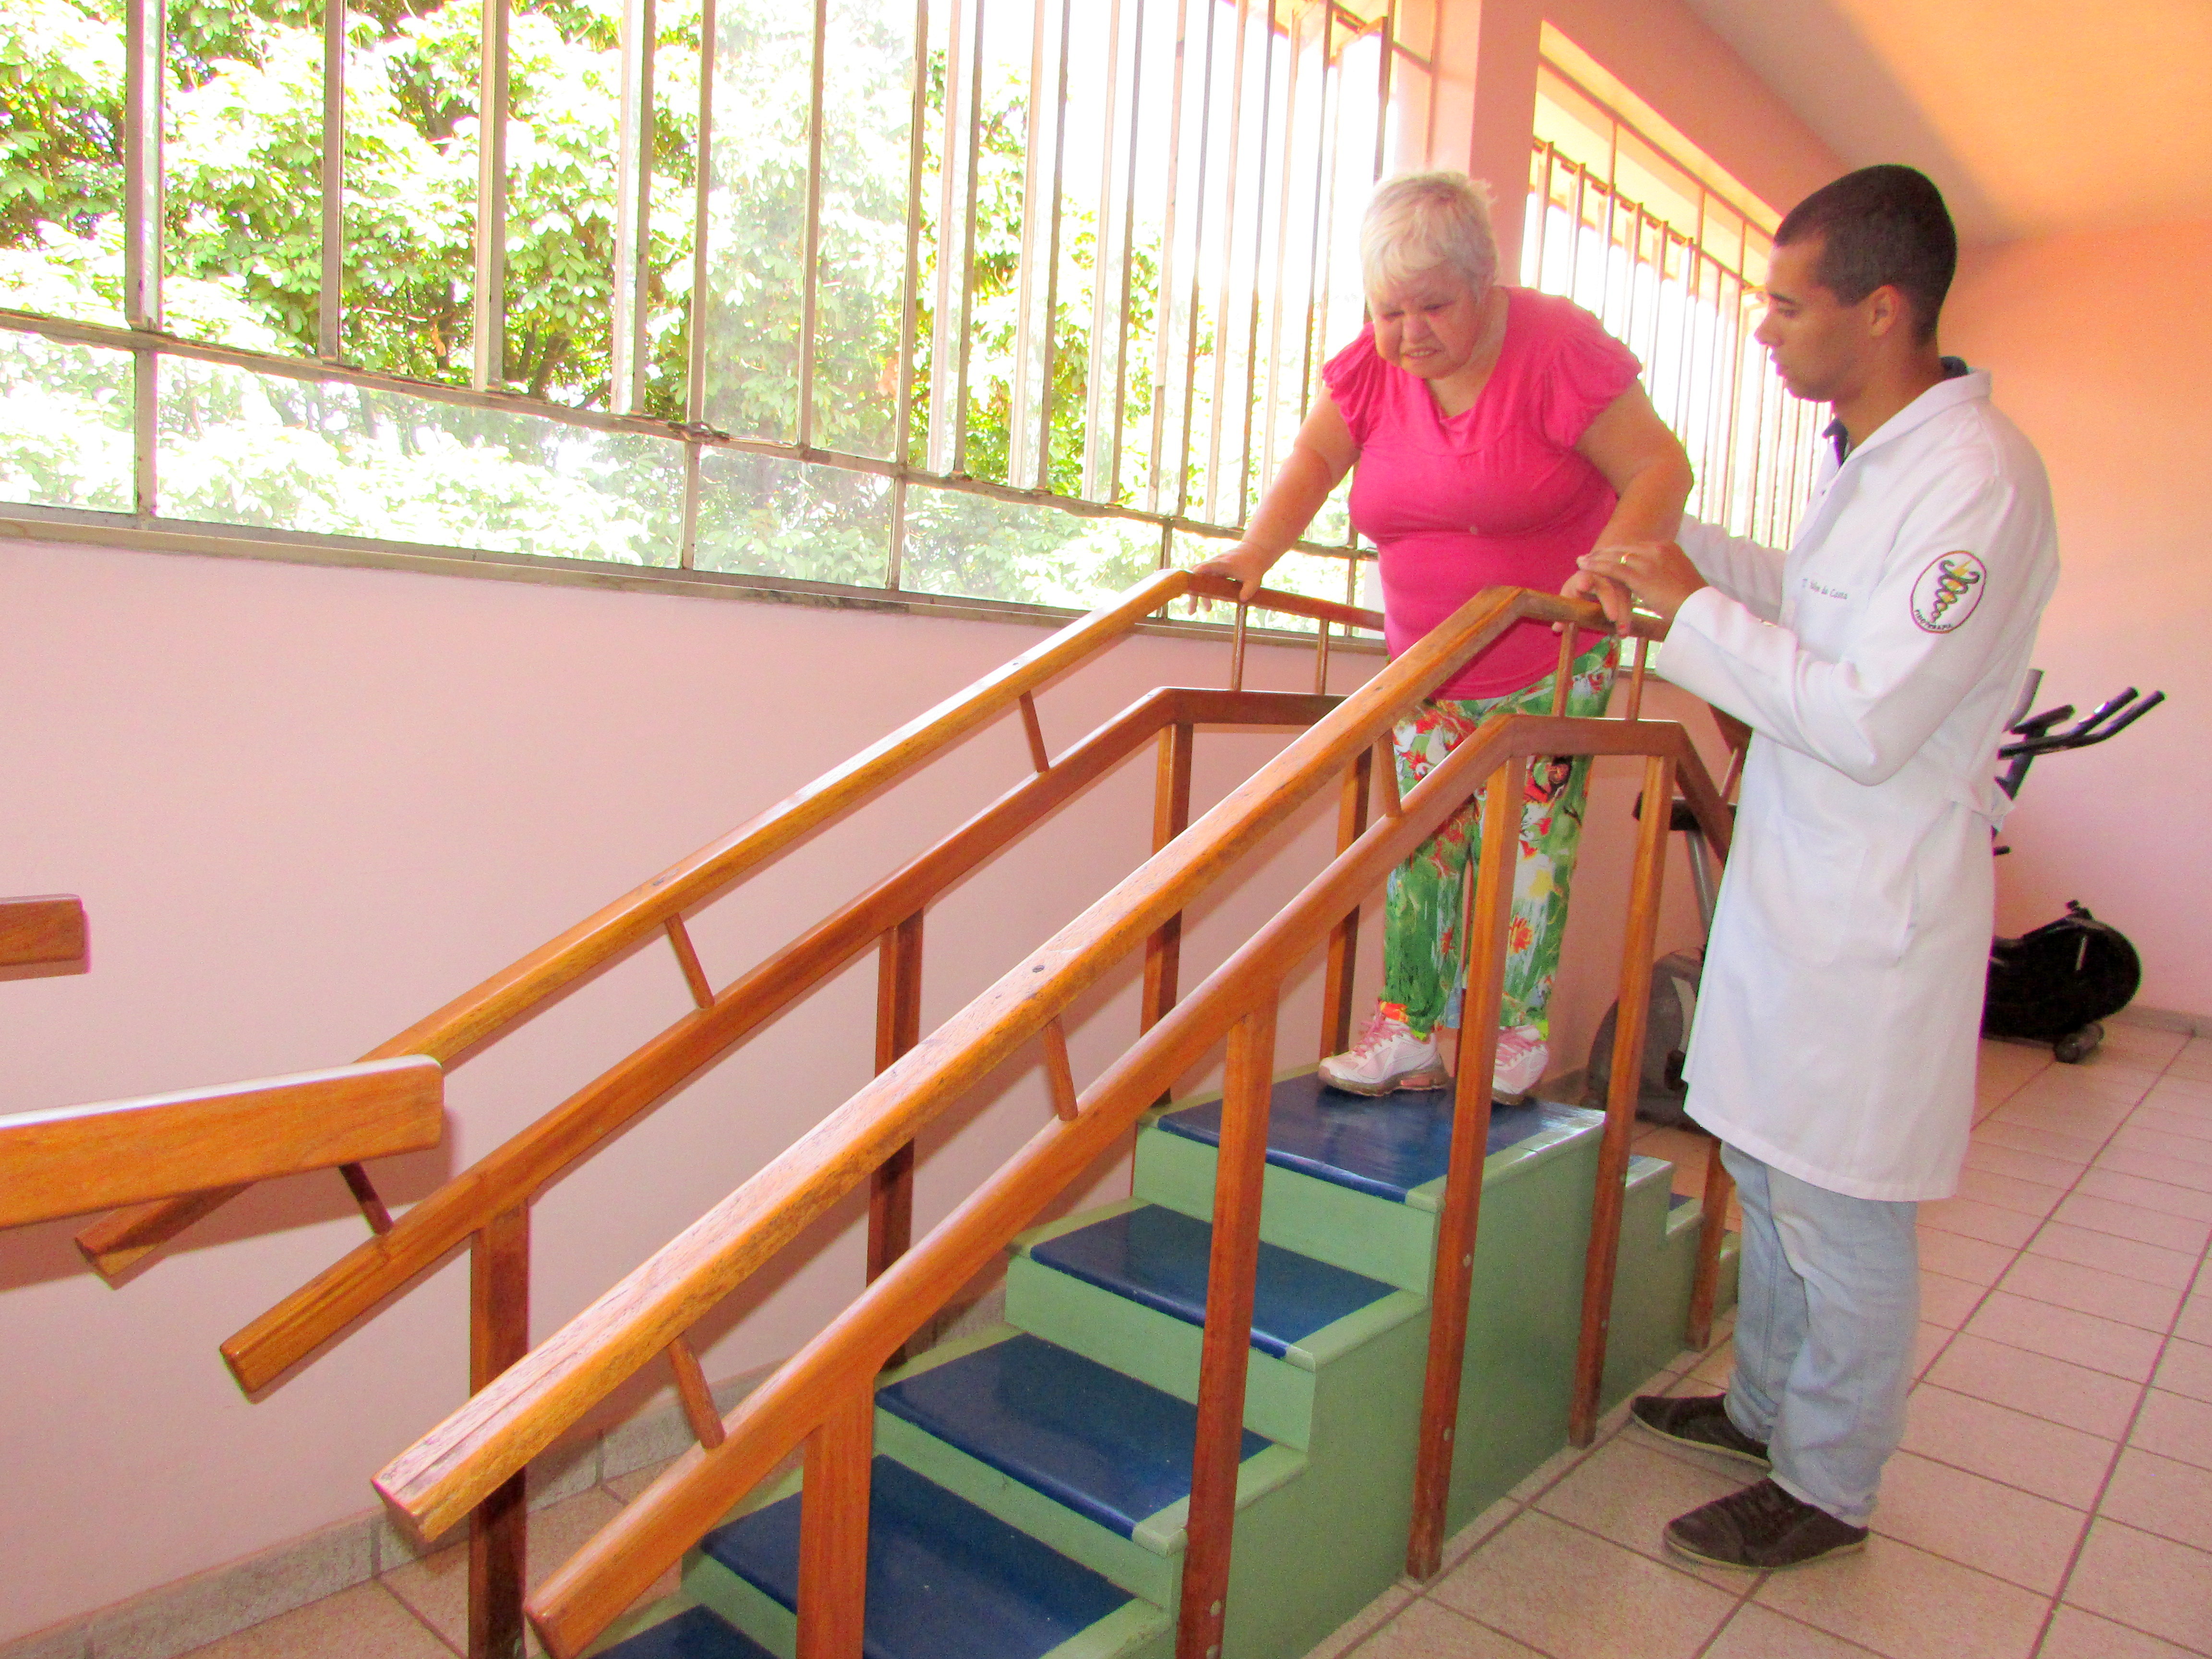 Fisioterapia na promoção da saúde de pessoas com deficiências